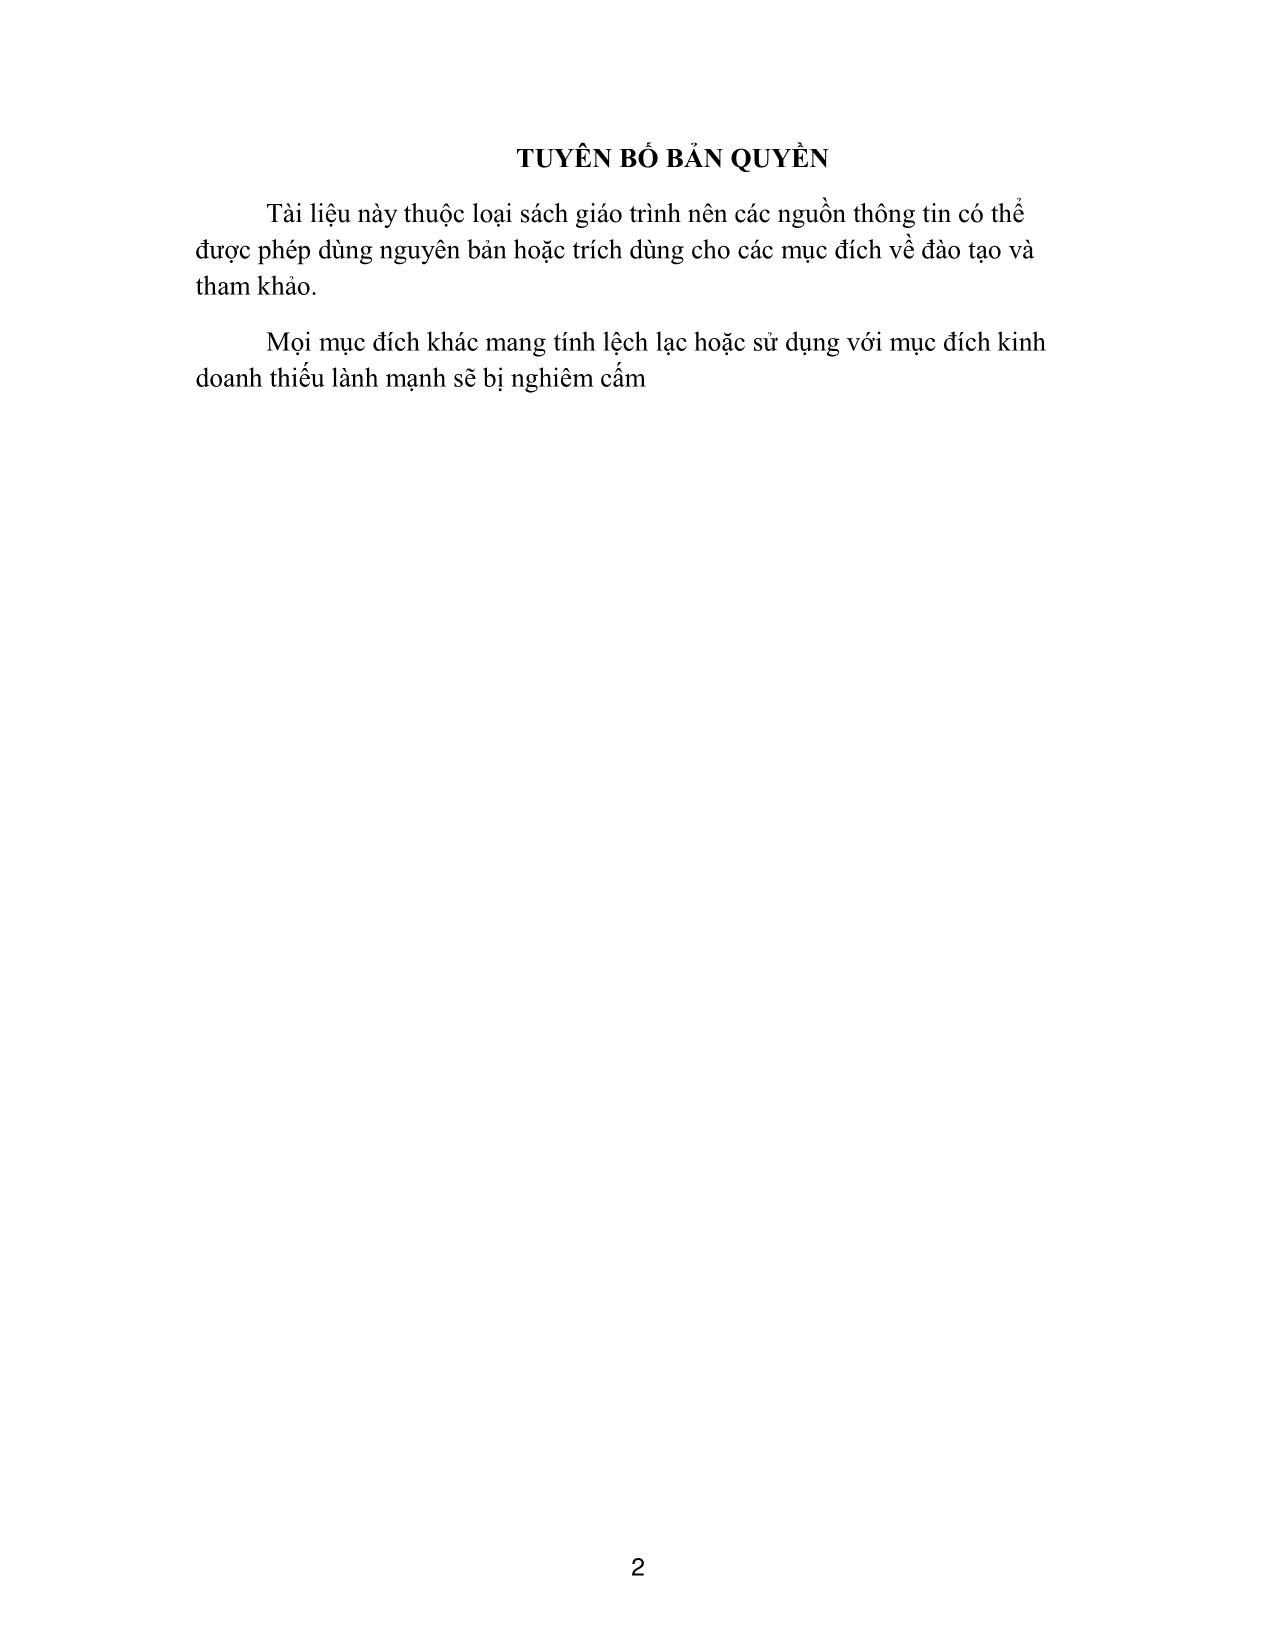 Giáo trình Thanh nhạc - Thanh nhạc 1 trang 2